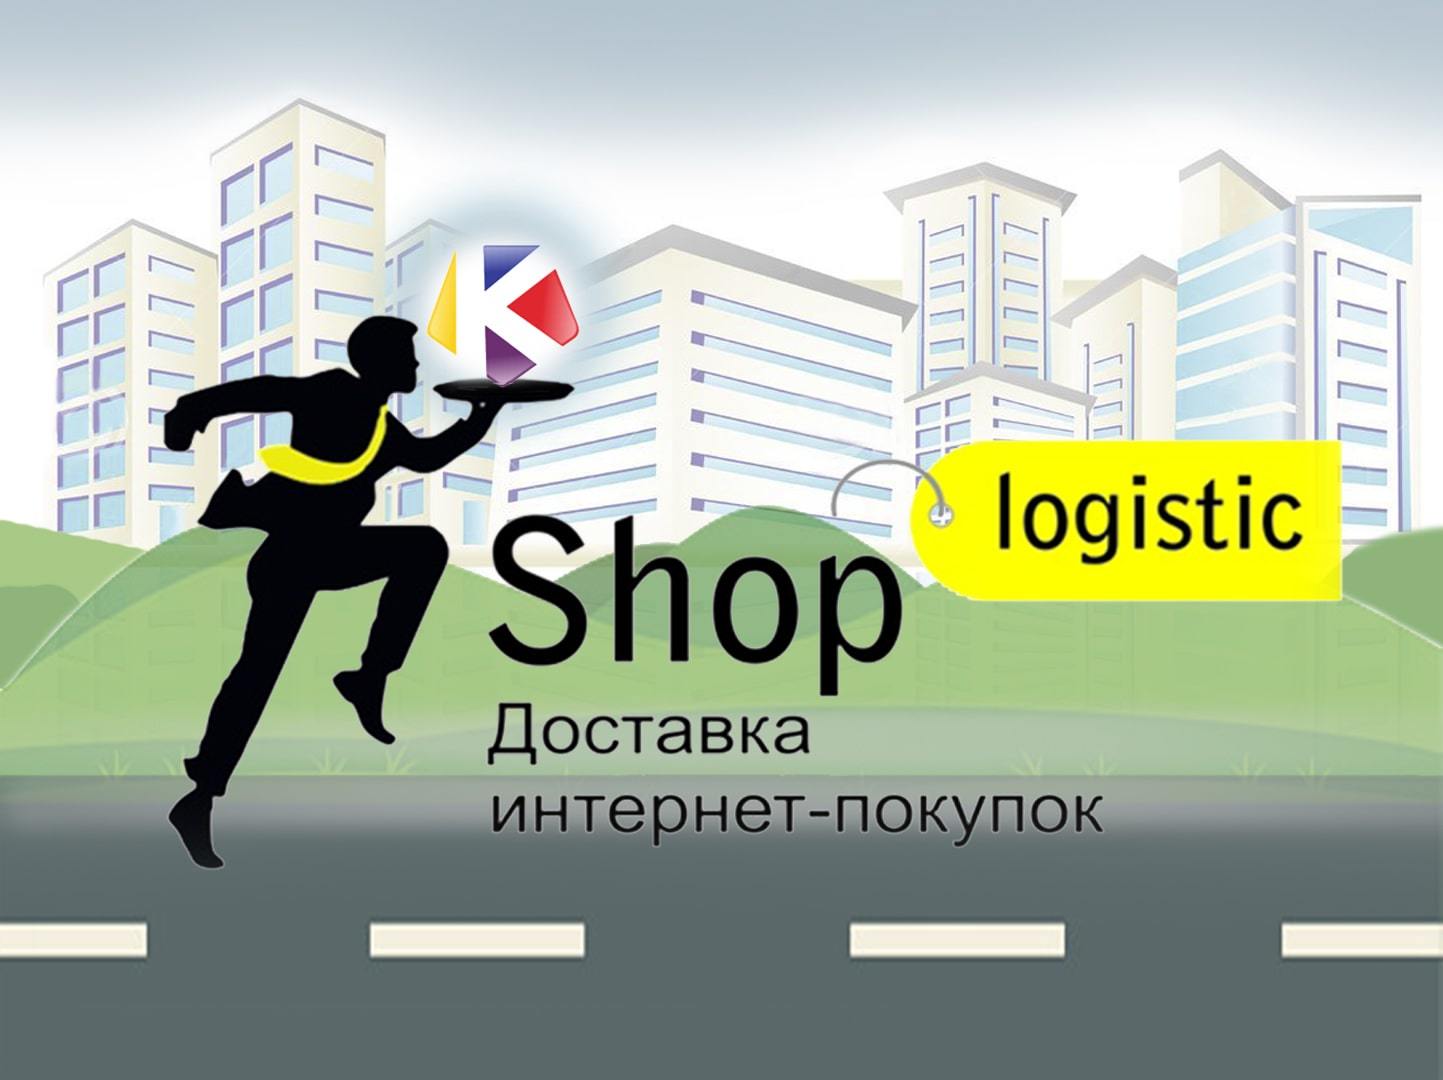 Shop Logistic - доставка ваших товаров